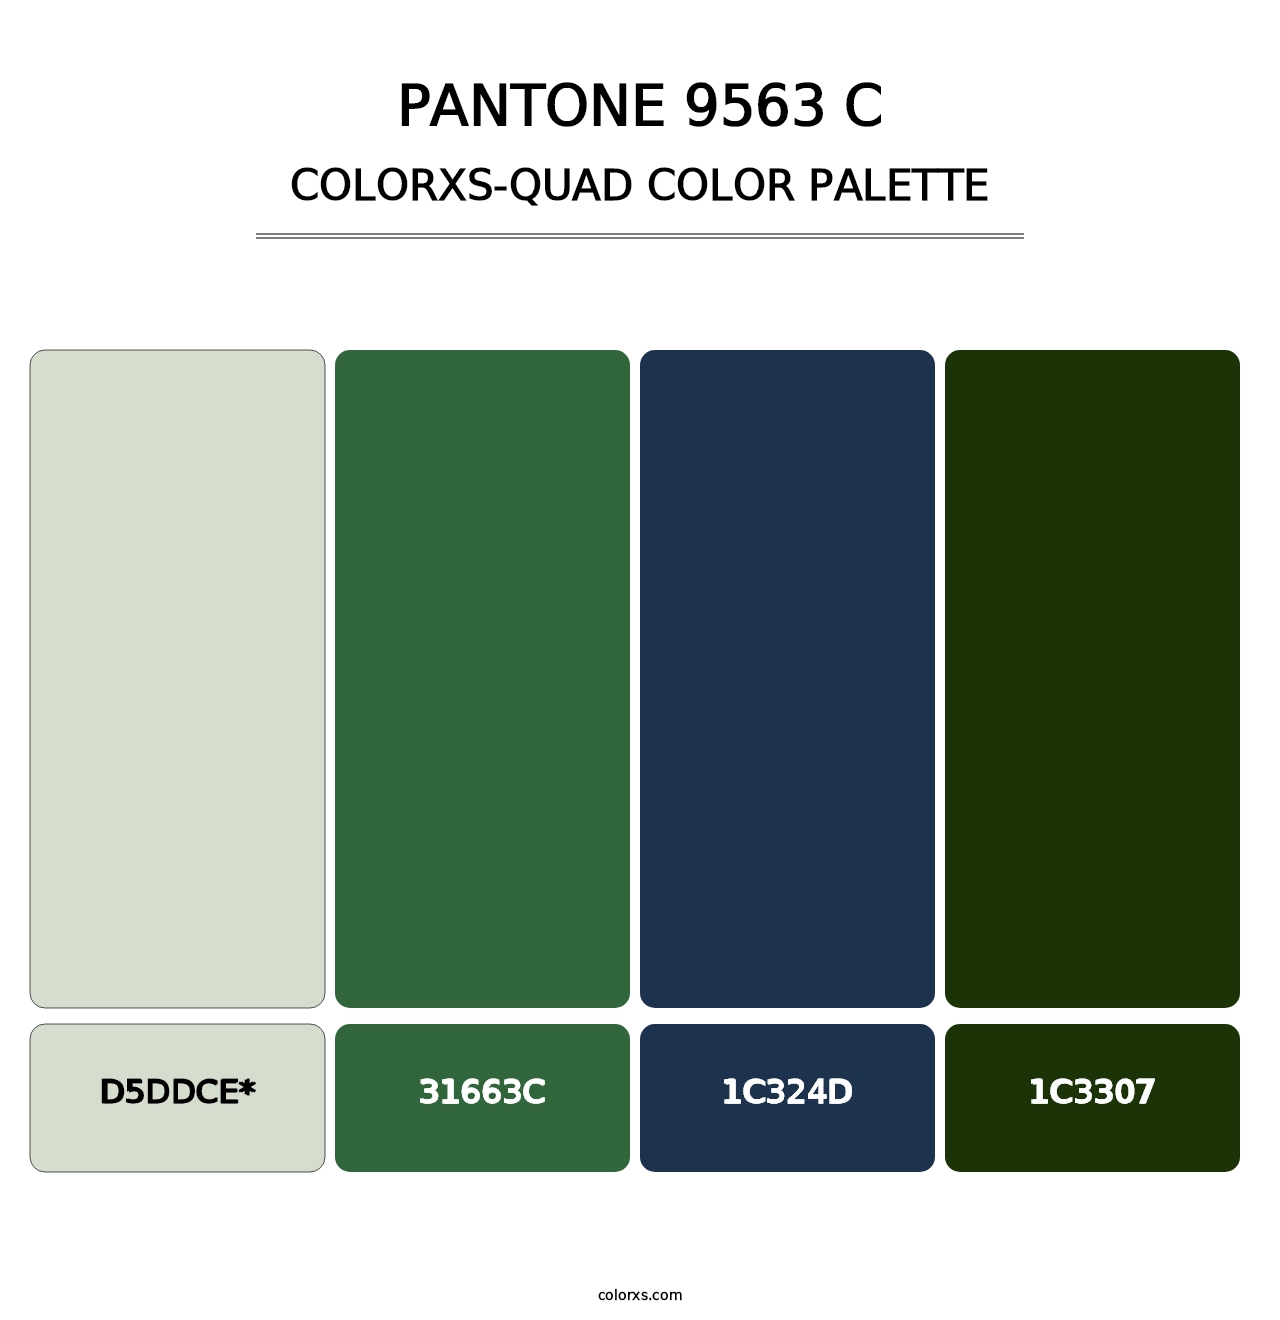 PANTONE 9563 C - Colorxs Quad Palette